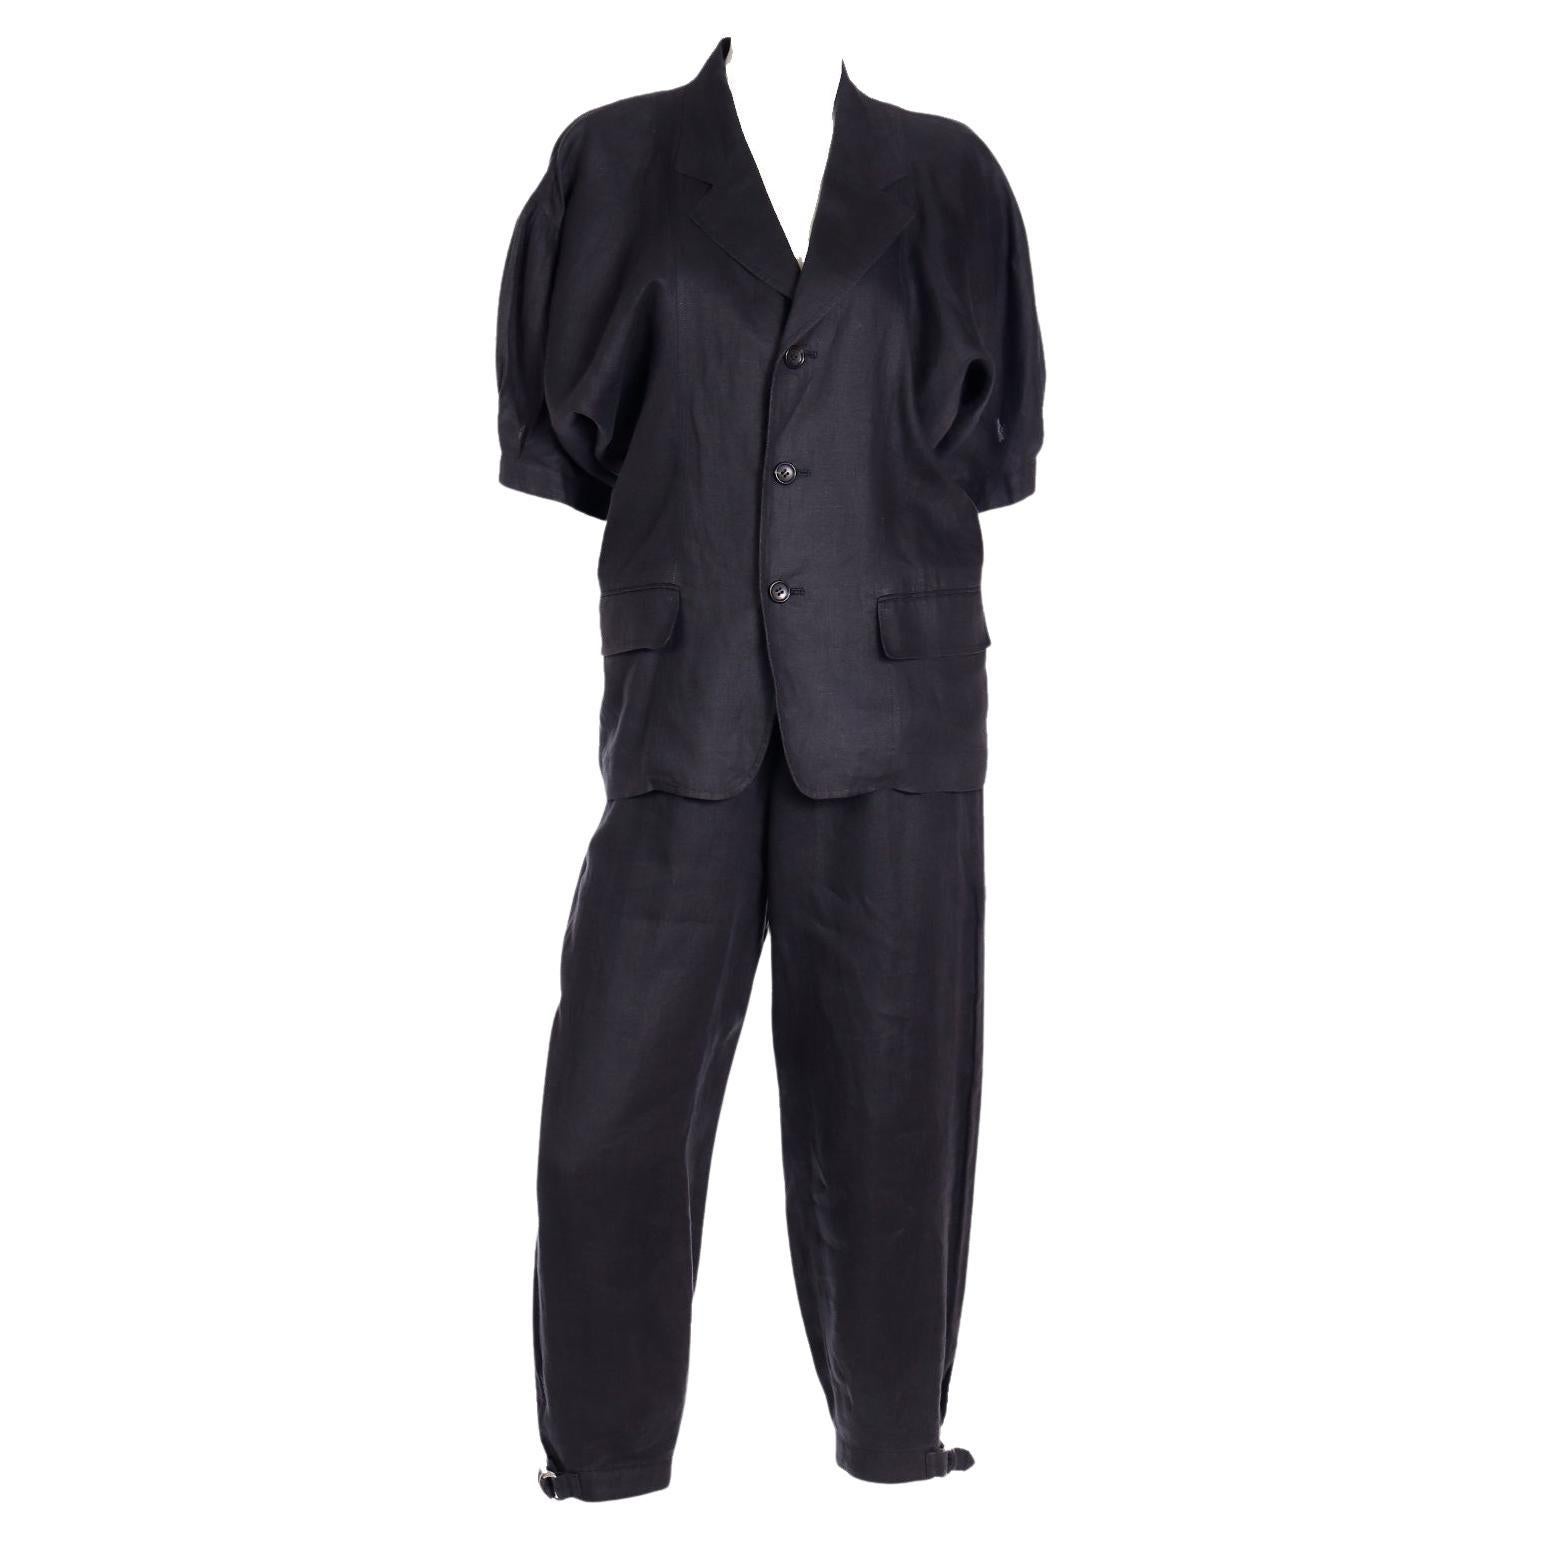 Comme des Garcons S/S 1989 Vintage Black Linen Jacket & Pants Outfit For Sale